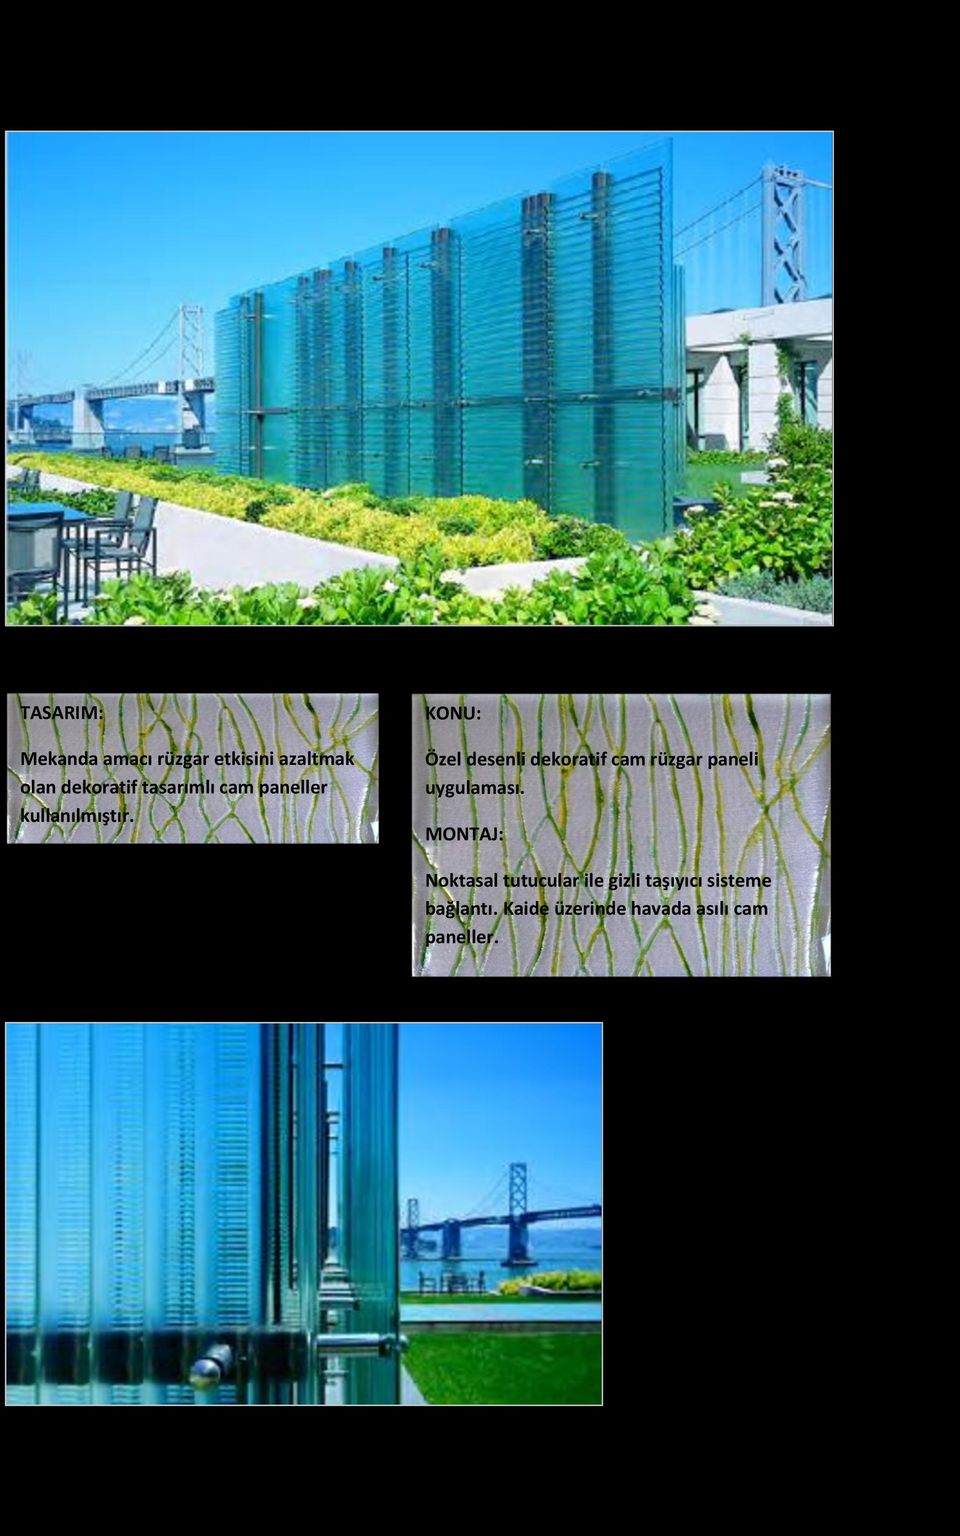 KONU: Özel desenli dekoratif cam rüzgar paneli uygulaması.